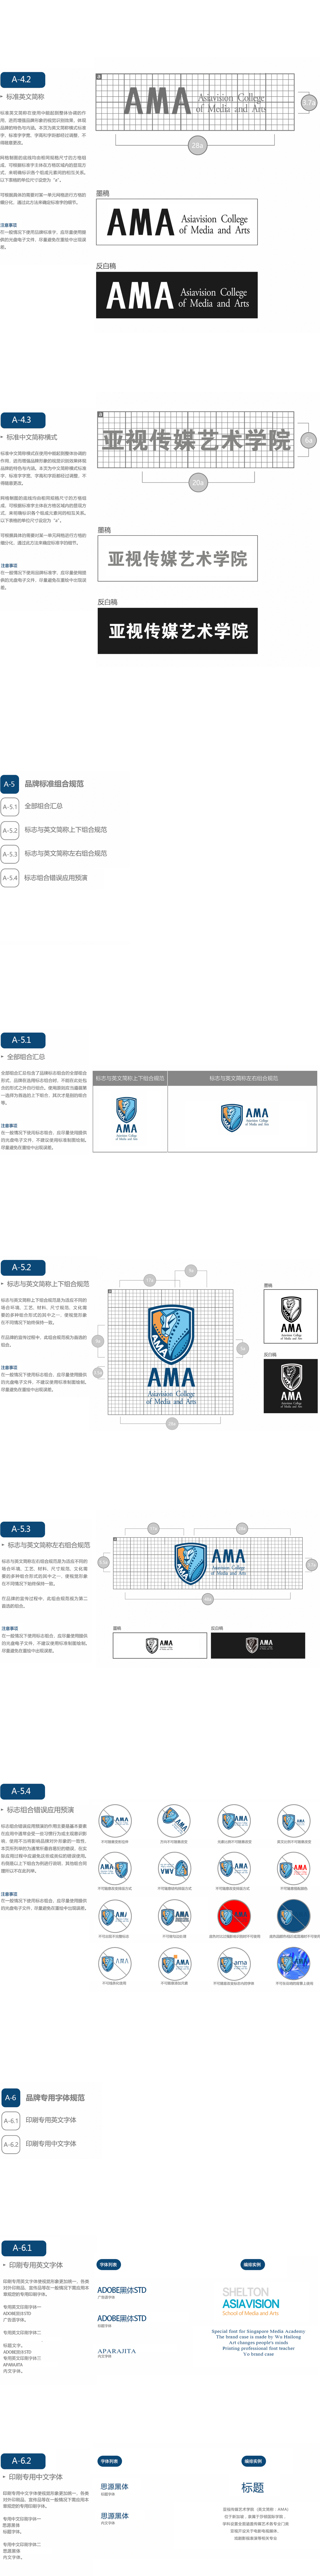 新加坡AMA传媒艺术学院丨品牌全案-YO图9